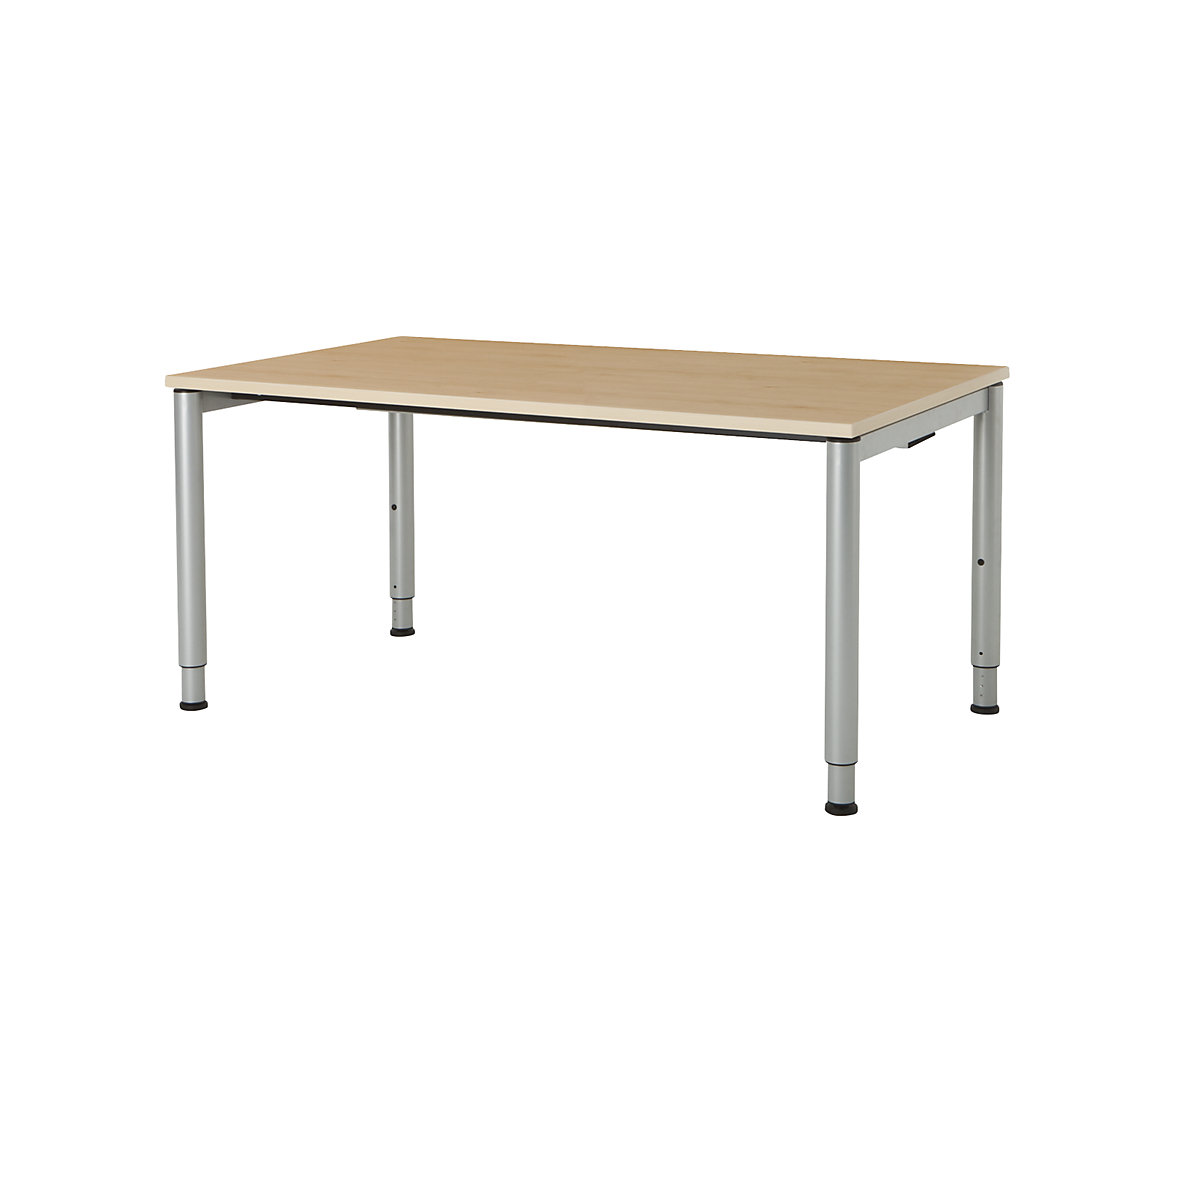 Pravokotna miza, podnožje iz okroglih cevi – mauser, VxŠ 650 – 850 x 1600 mm, plošča imitacija javorja, ogrodje aluminijaste barve-2